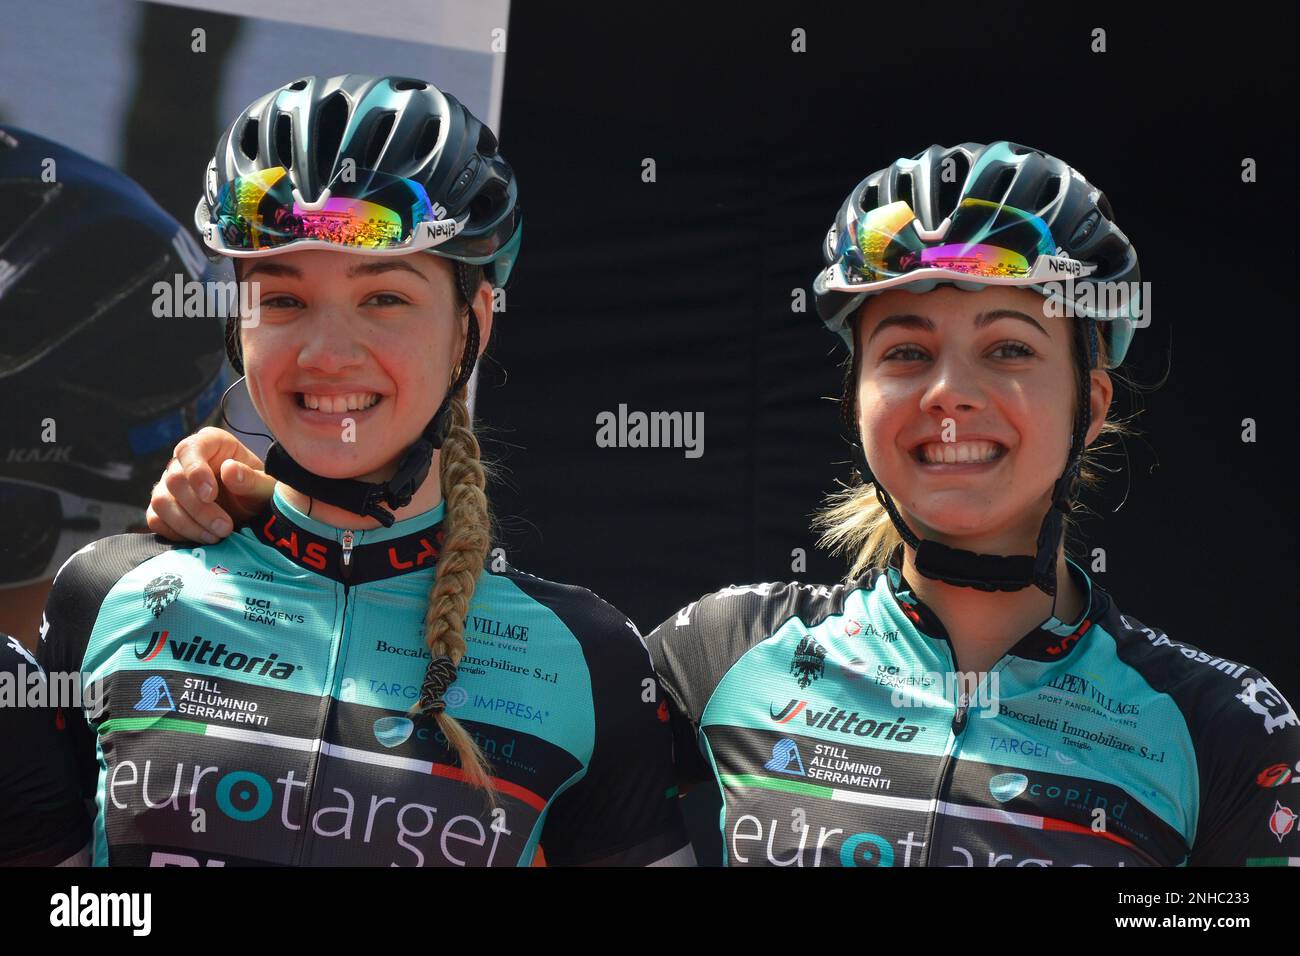 Italy, Corbetta, Giro D'italia Female, Fidanza Sister Stock Photo